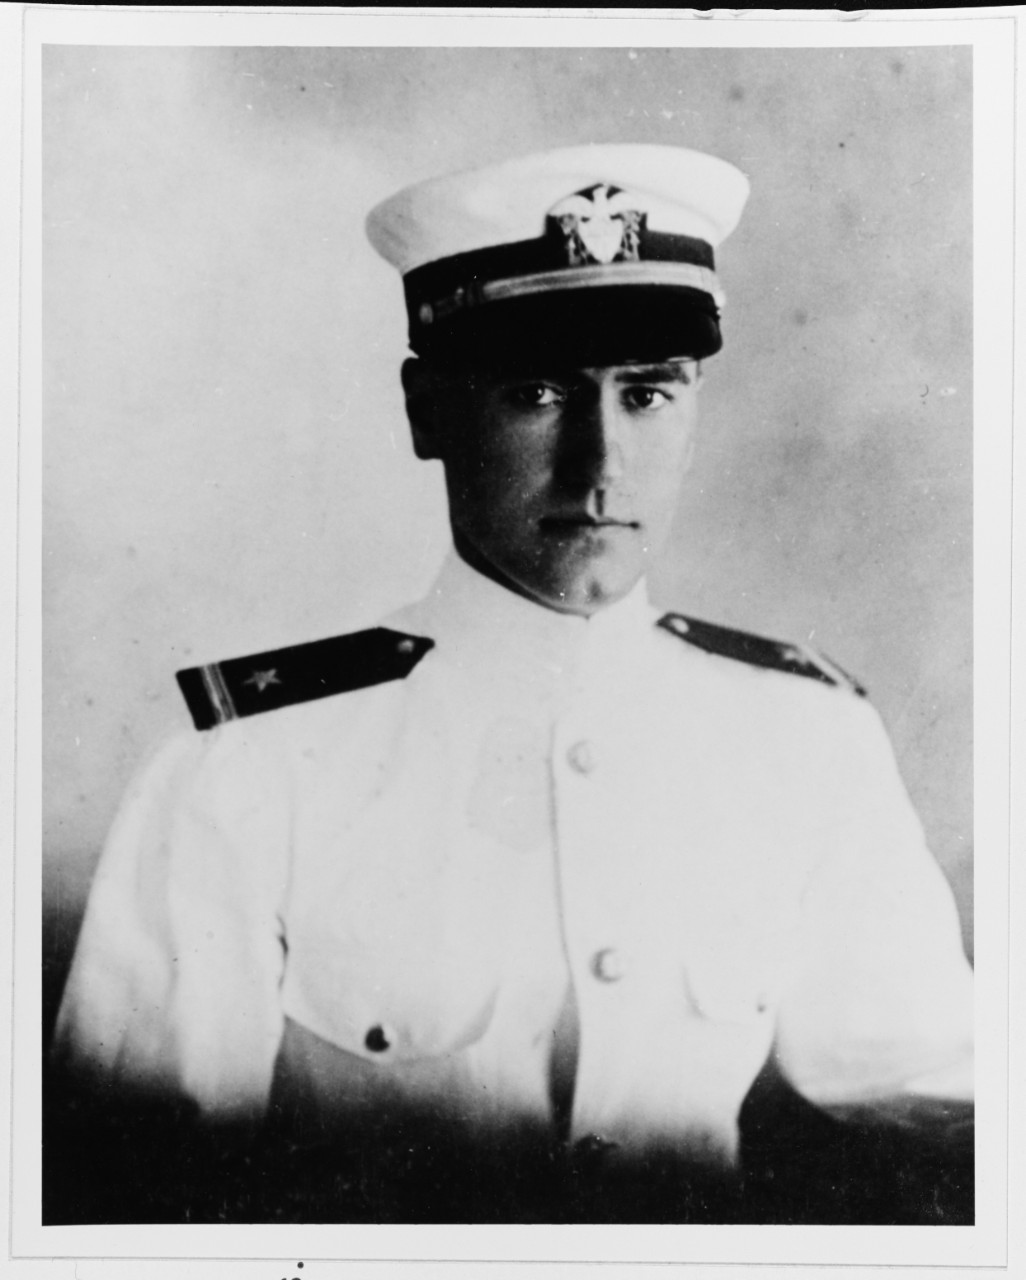 Ensign William O. Harris, USN